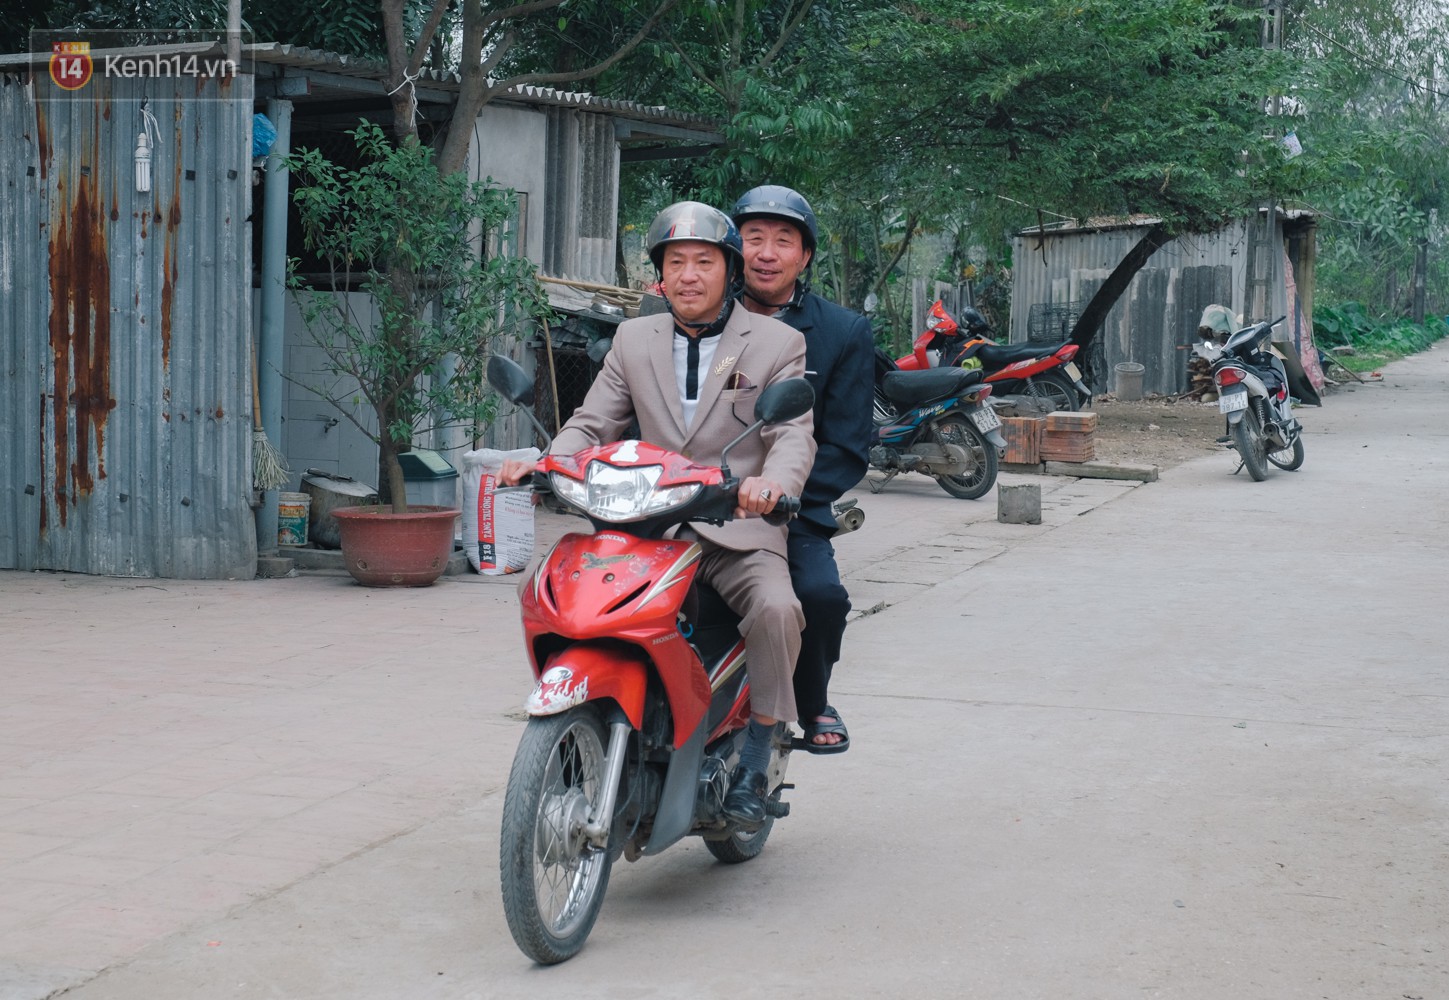 Chuyện cụ ông 69 tuổi bắt xe ôm, xe buýt gần 100km đến nhà bố mẹ Quang Hải để tặng một món quà đặc biệt - Ảnh 2.